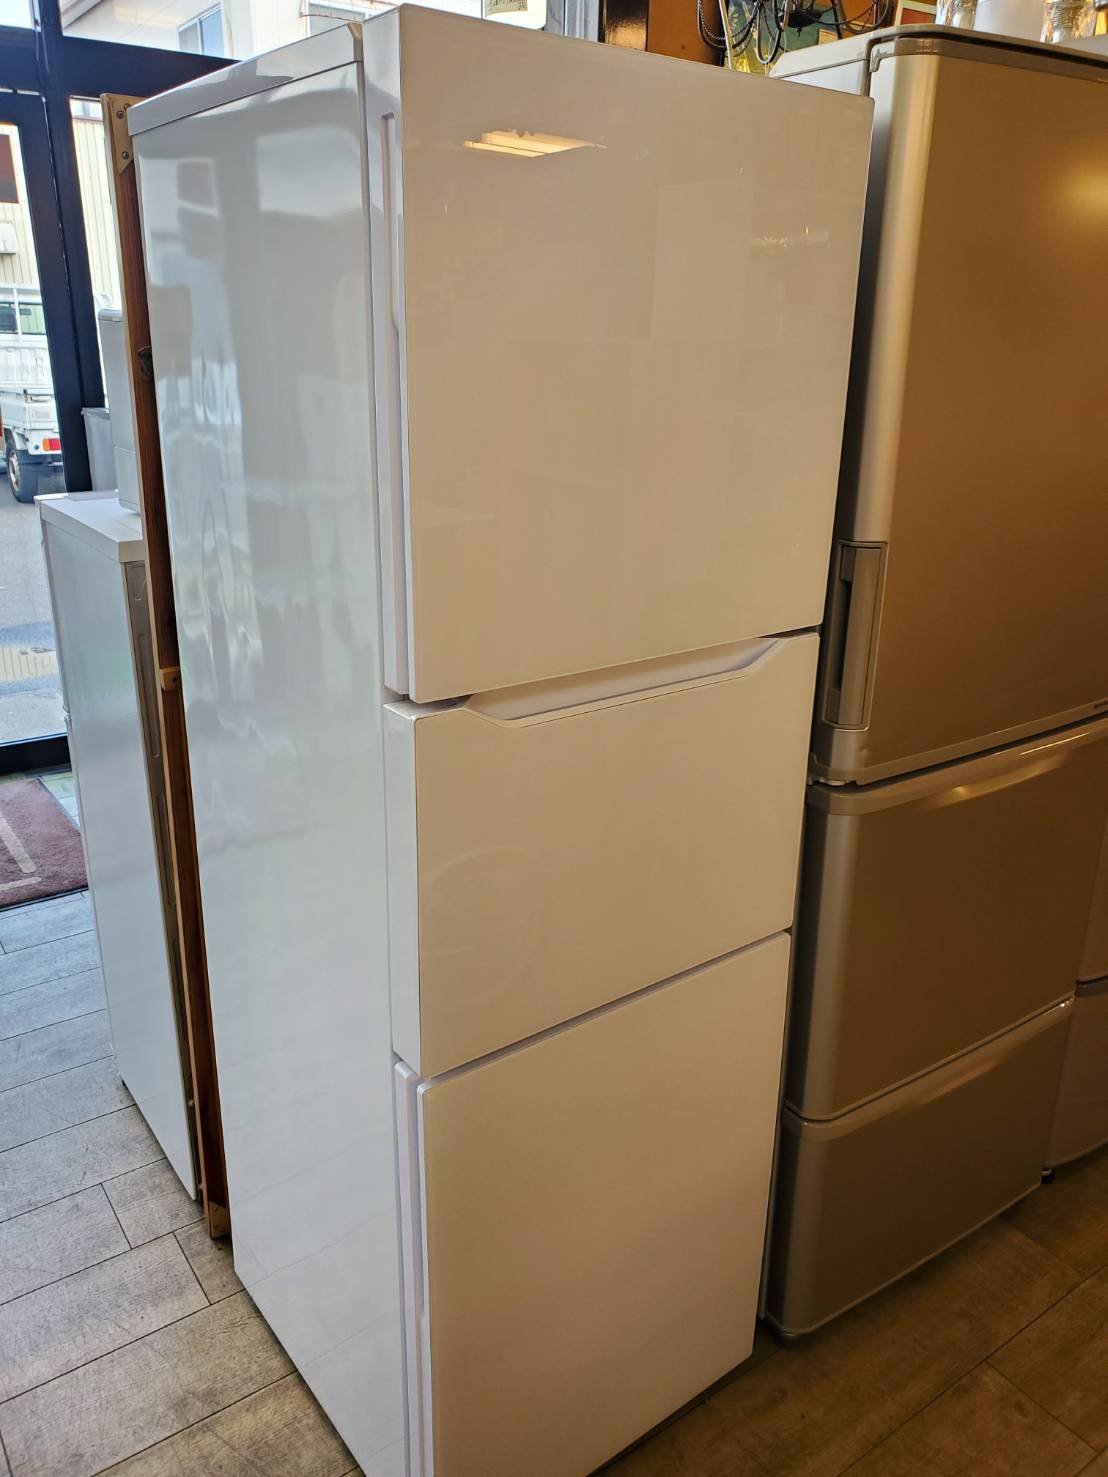 ☆TWINBIRD ツインバード 199L 3ドア 冷蔵庫 2018年製 大容量 冷凍庫 冷凍冷蔵庫 買取しました☆  愛知と岐阜のリサイクルショップ 再良市場